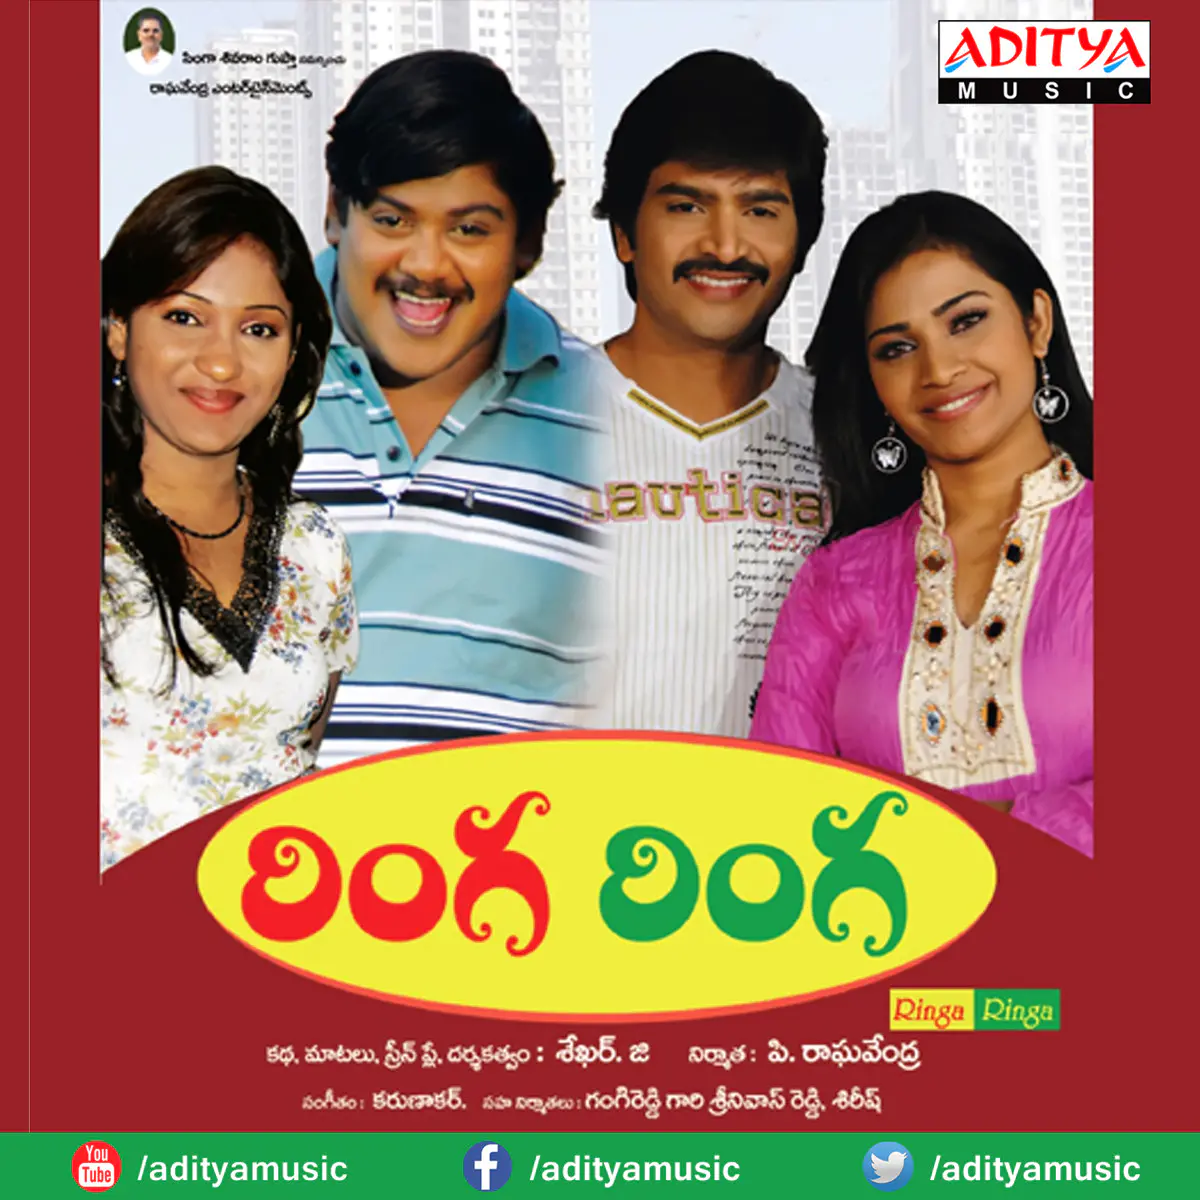 Ringa Ringa Tamil Song MP3 Download